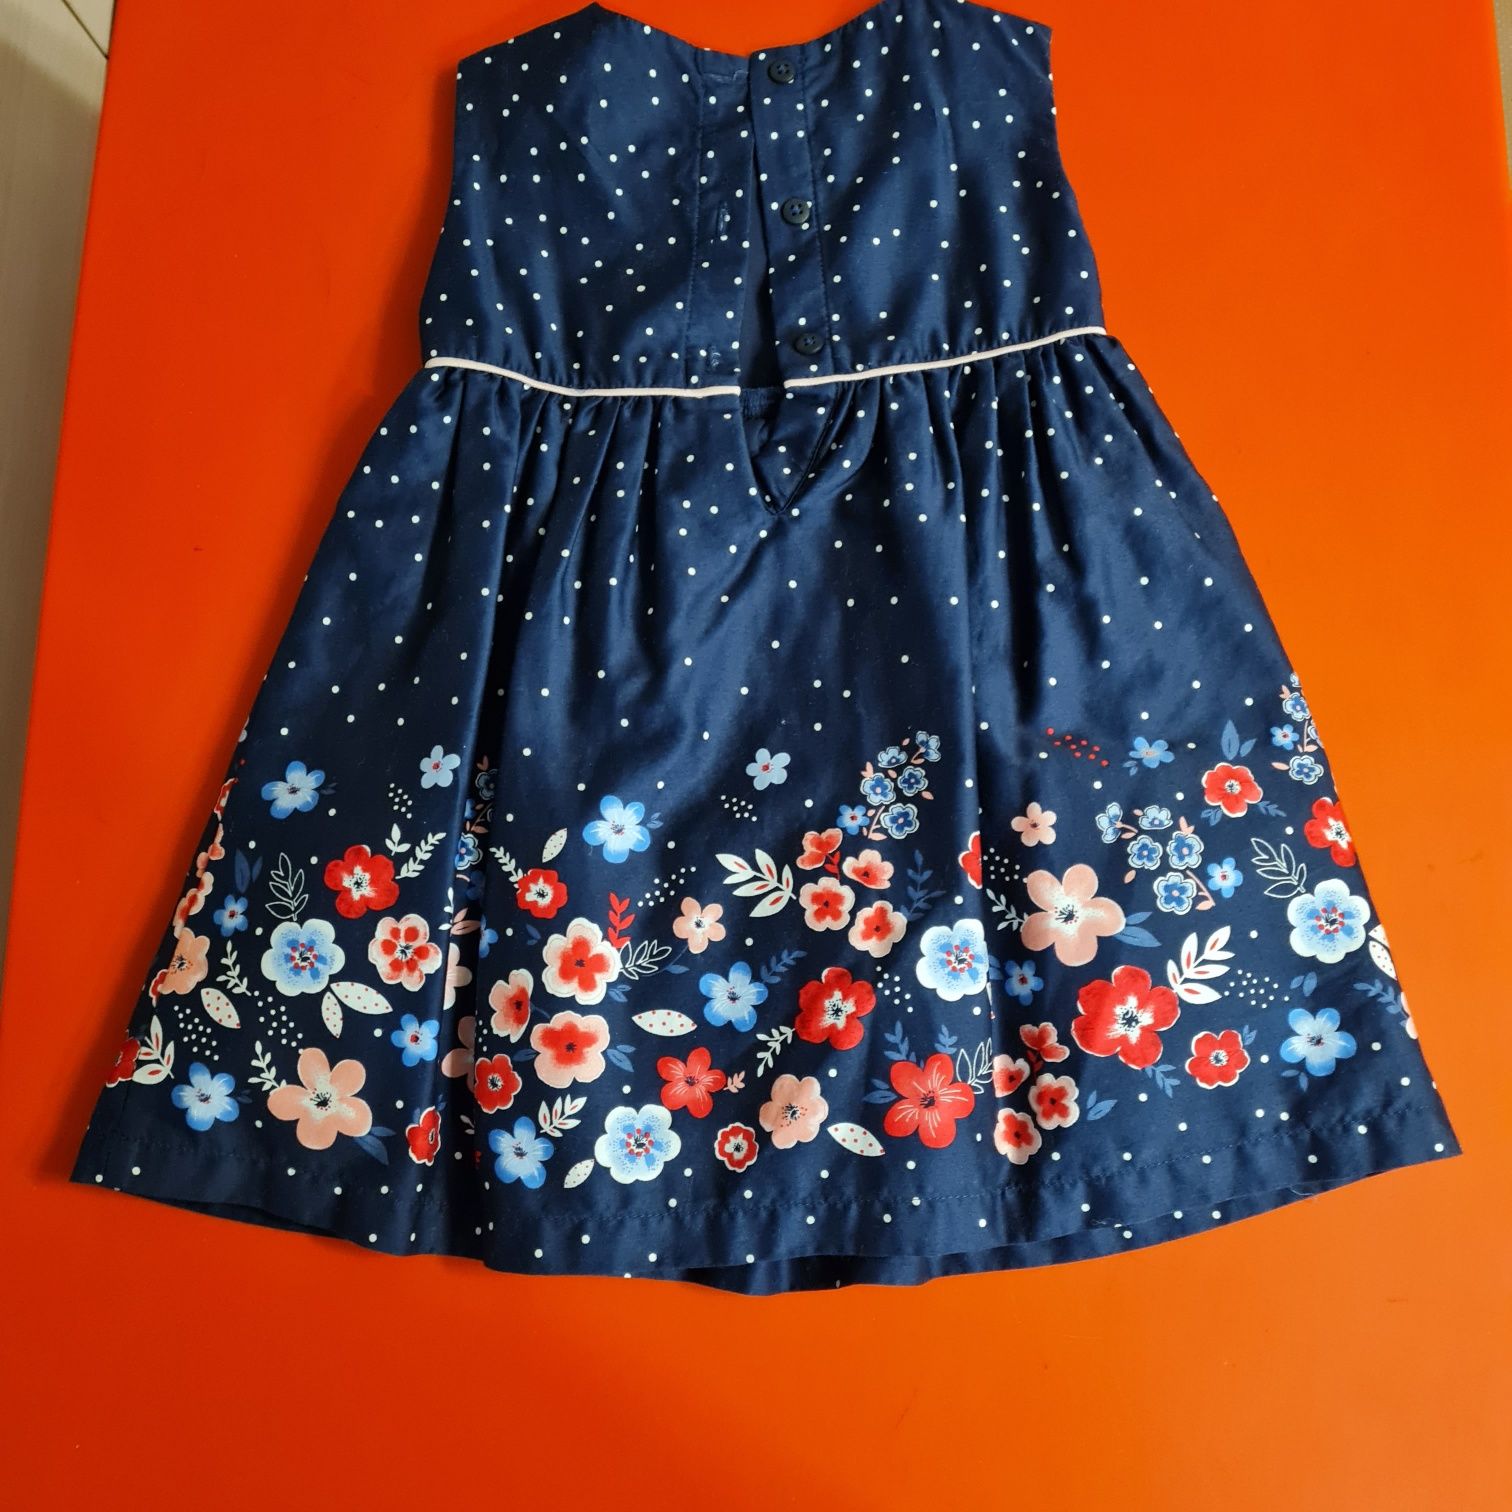 Vând rochie albastră cu flori, C&A, mărime 80